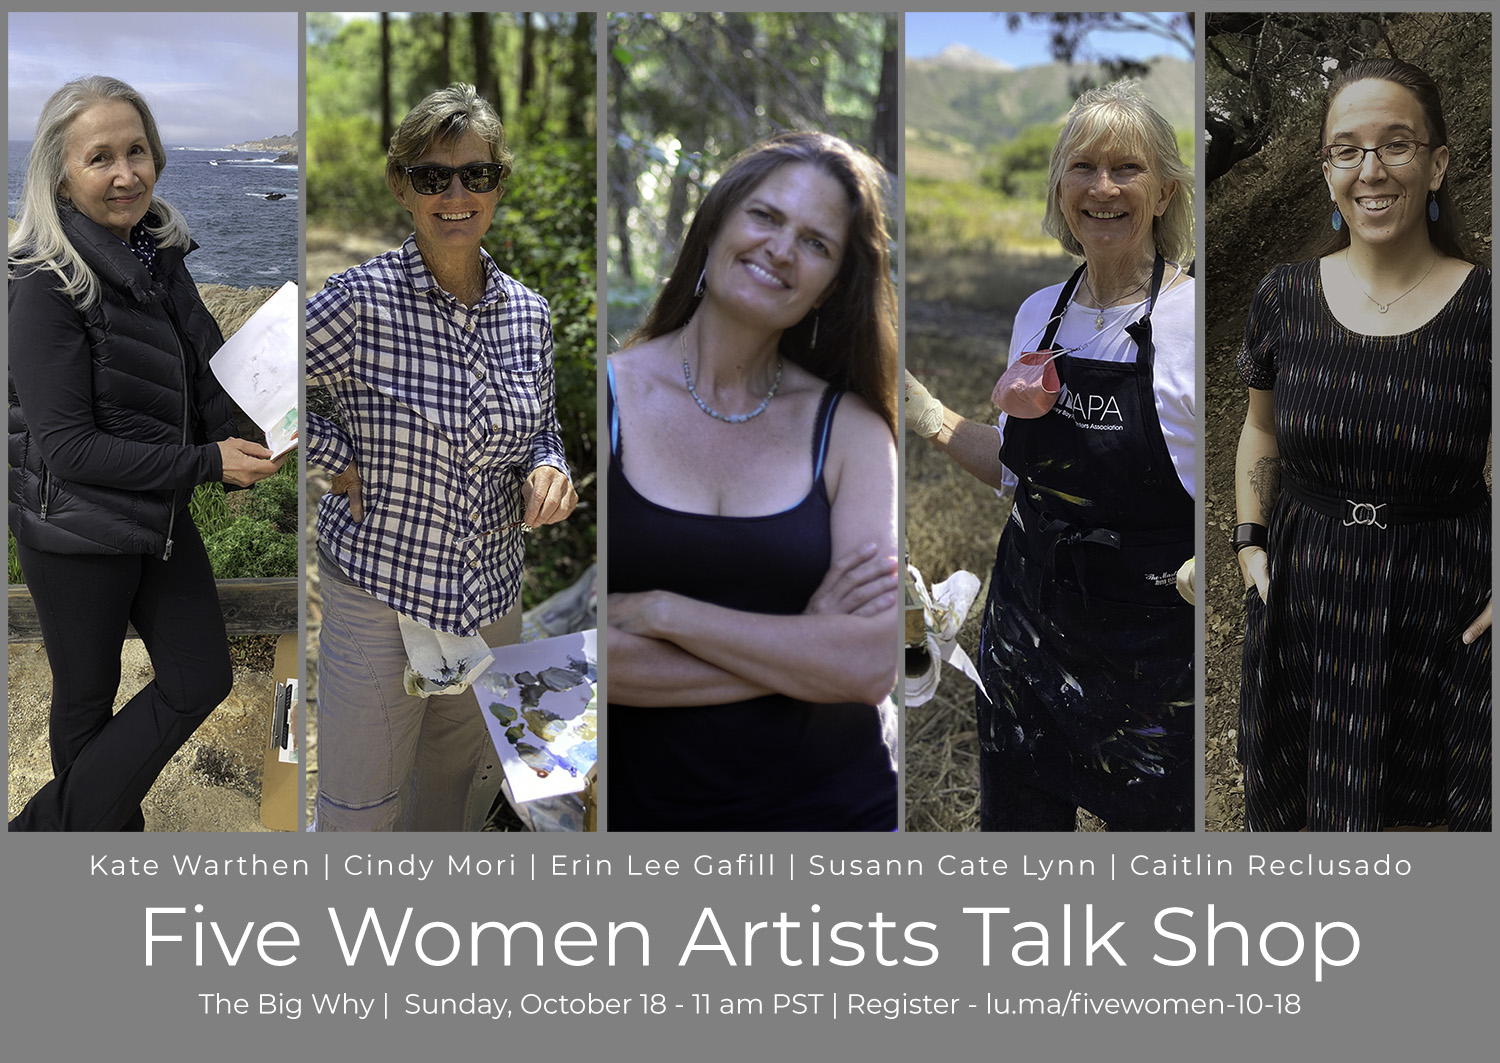 Five Women Artists Talk Shop - Erin Lee Gafill | Cindy Mori | Susann Cate Lynn | Caitlin Reclusado | Kate Warthen